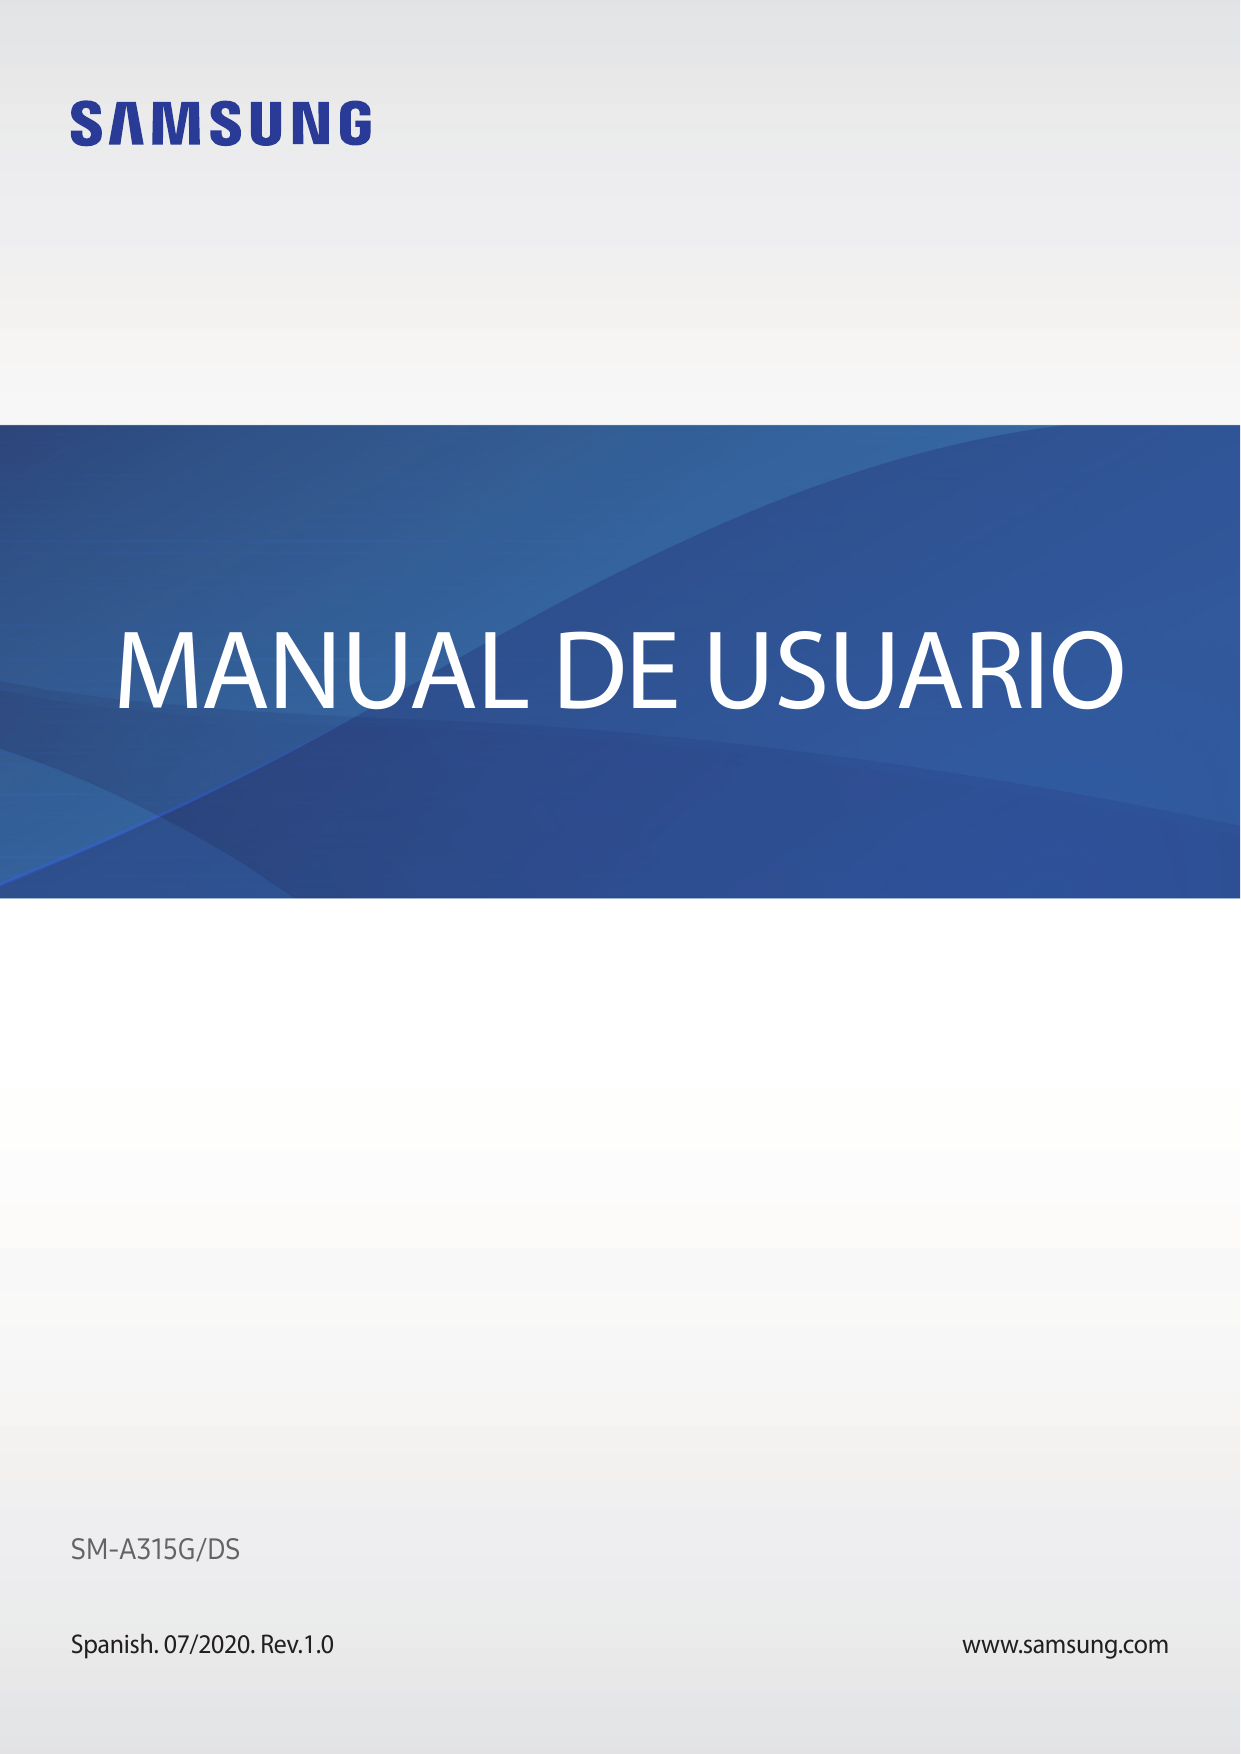 MANUAL DE USUARIOSM-A315G/DSSpanish. 07/2020. Rev.1.0www.samsung.com